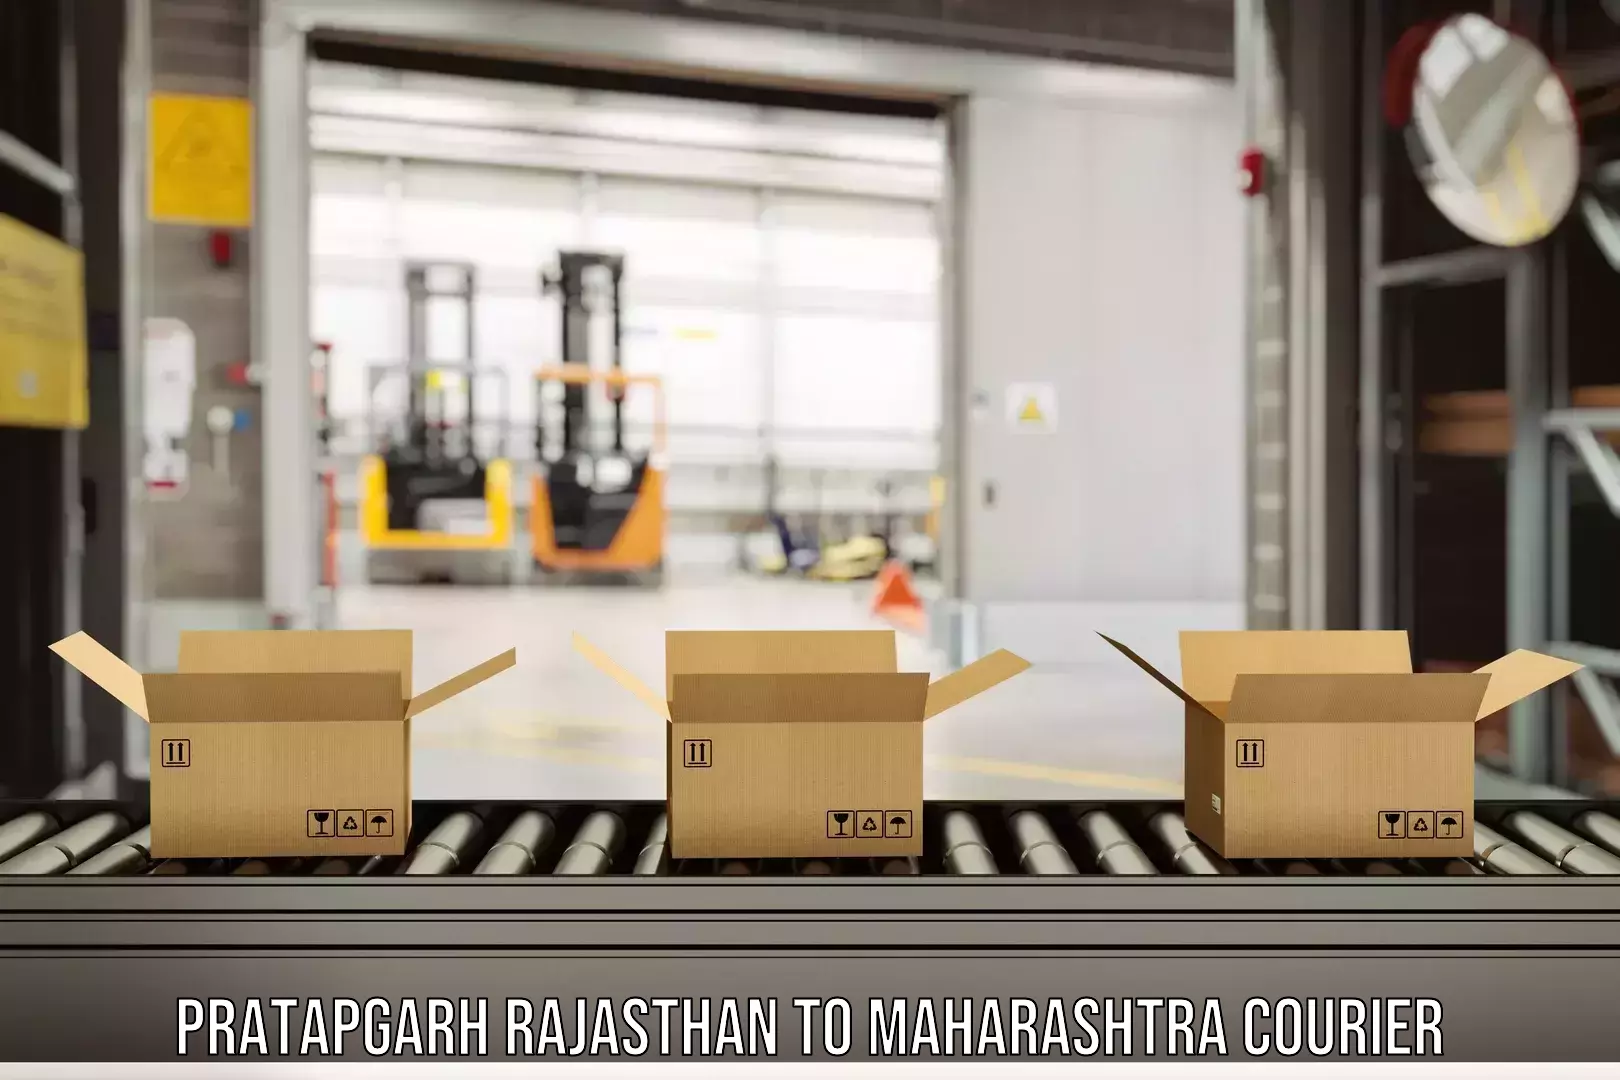 Express mail solutions Pratapgarh Rajasthan to Sindewahi